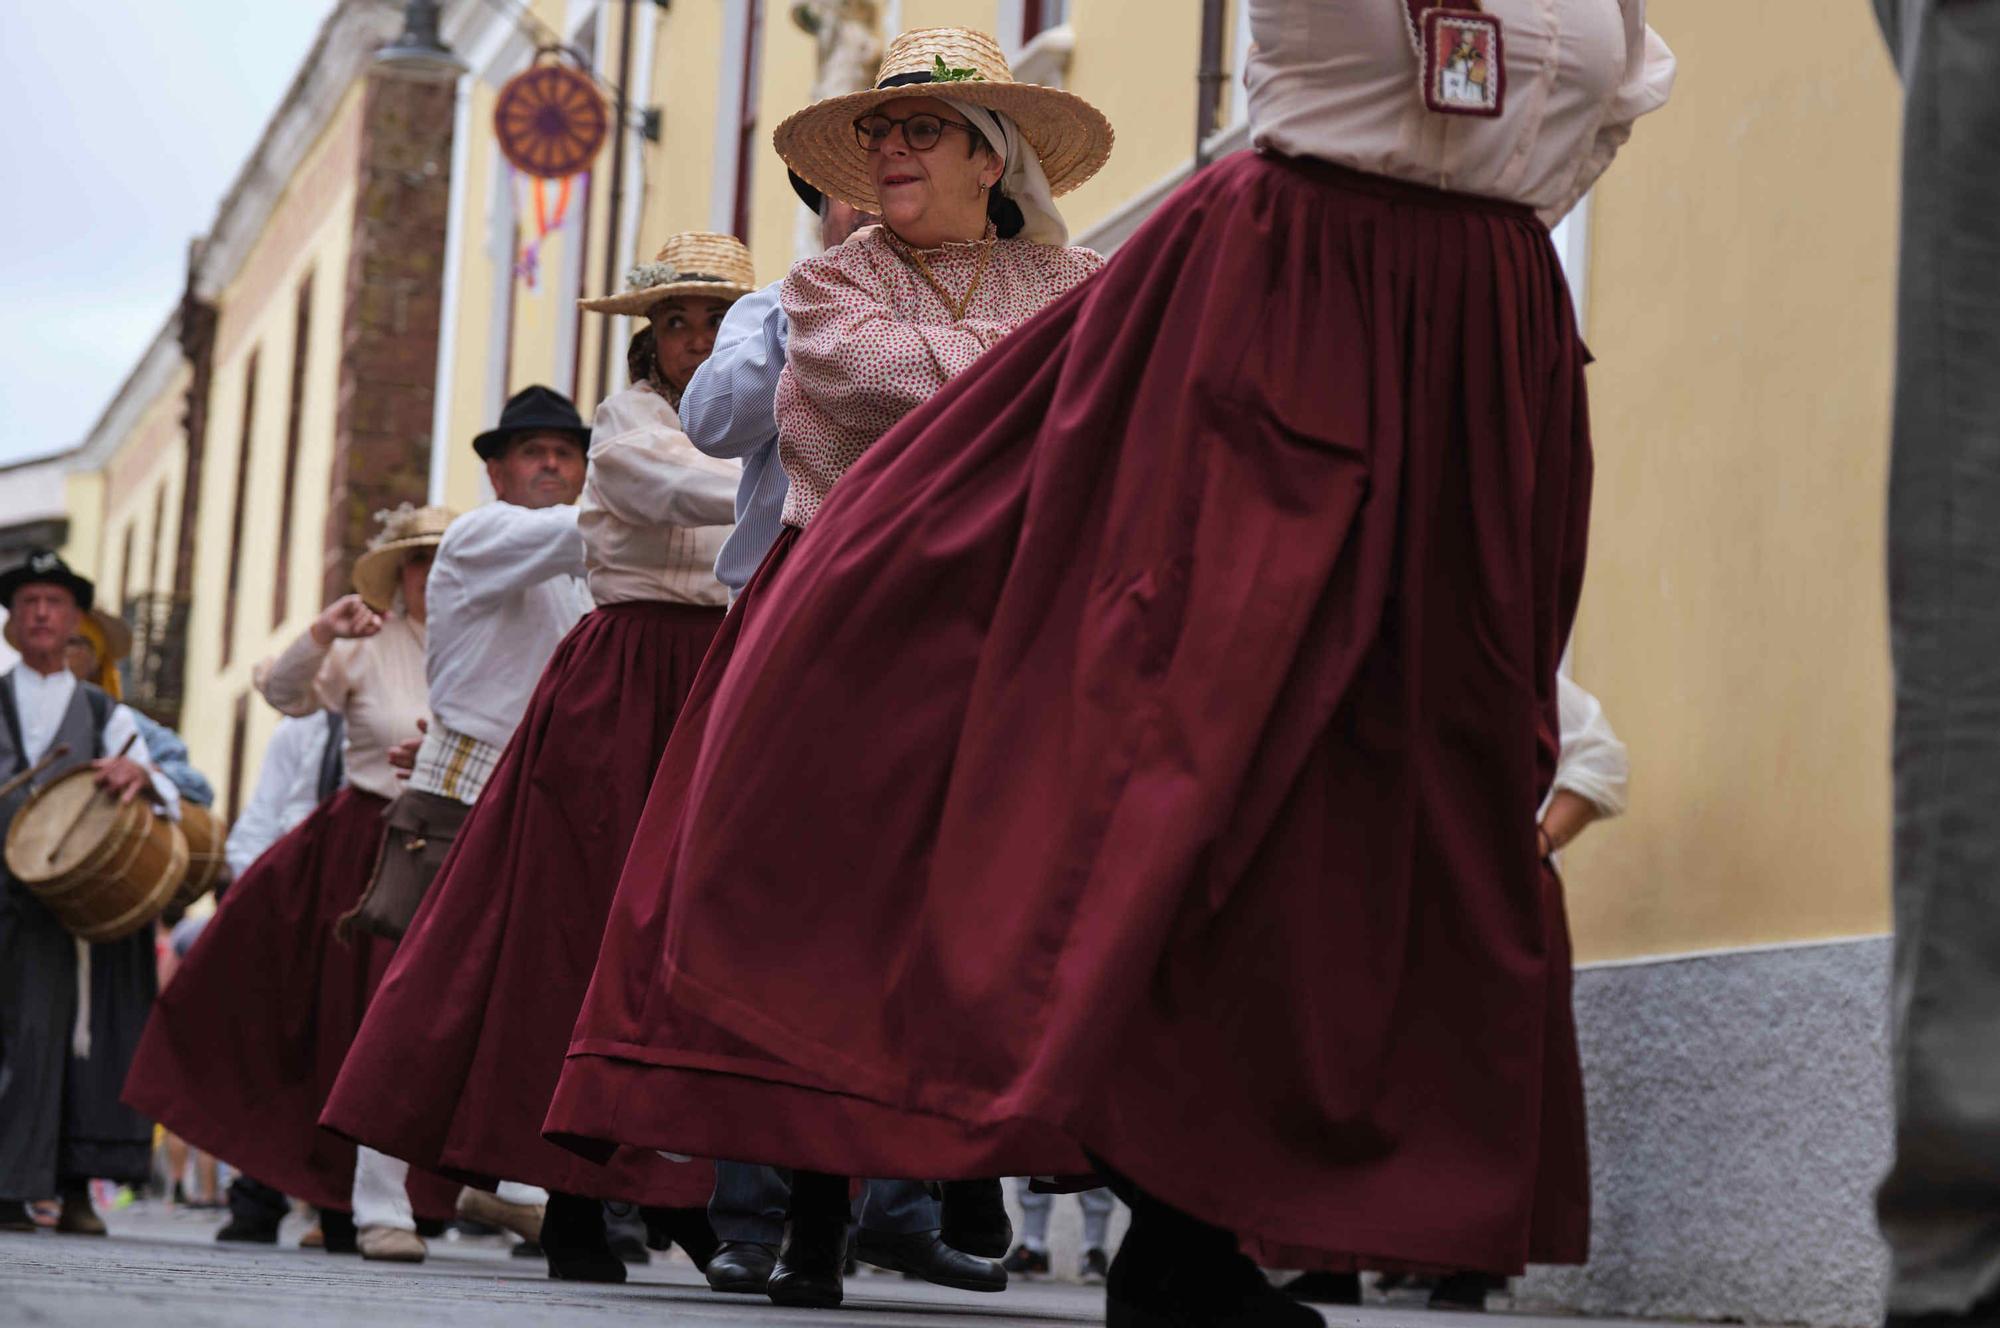 Muestra de las danzas rituales de Tenerife